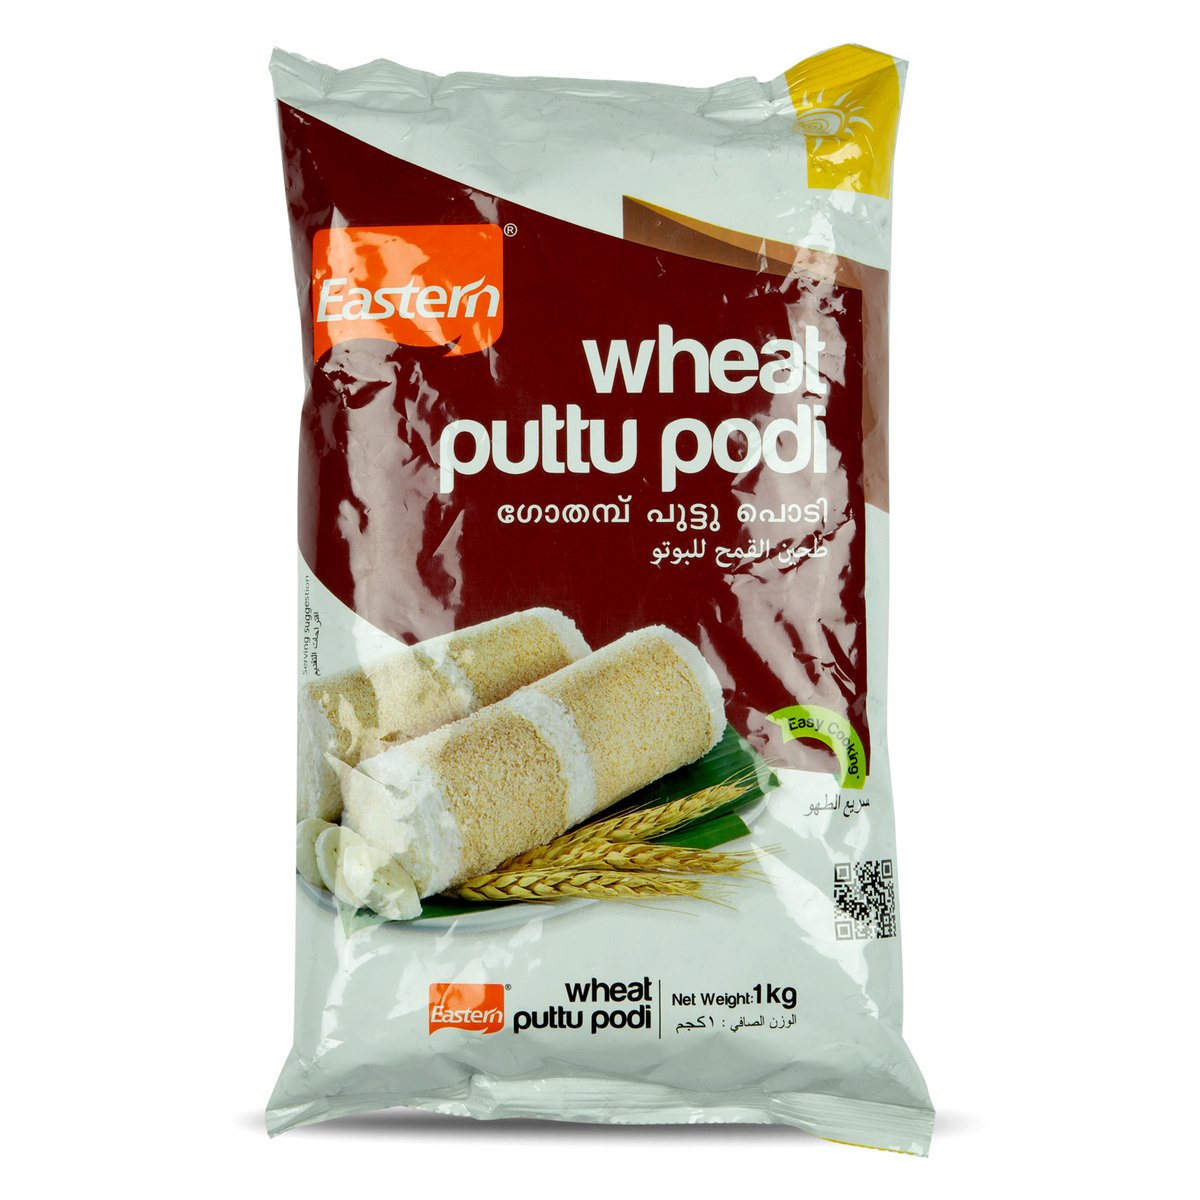 Eastern Wheat Puttu Podi 1 kg